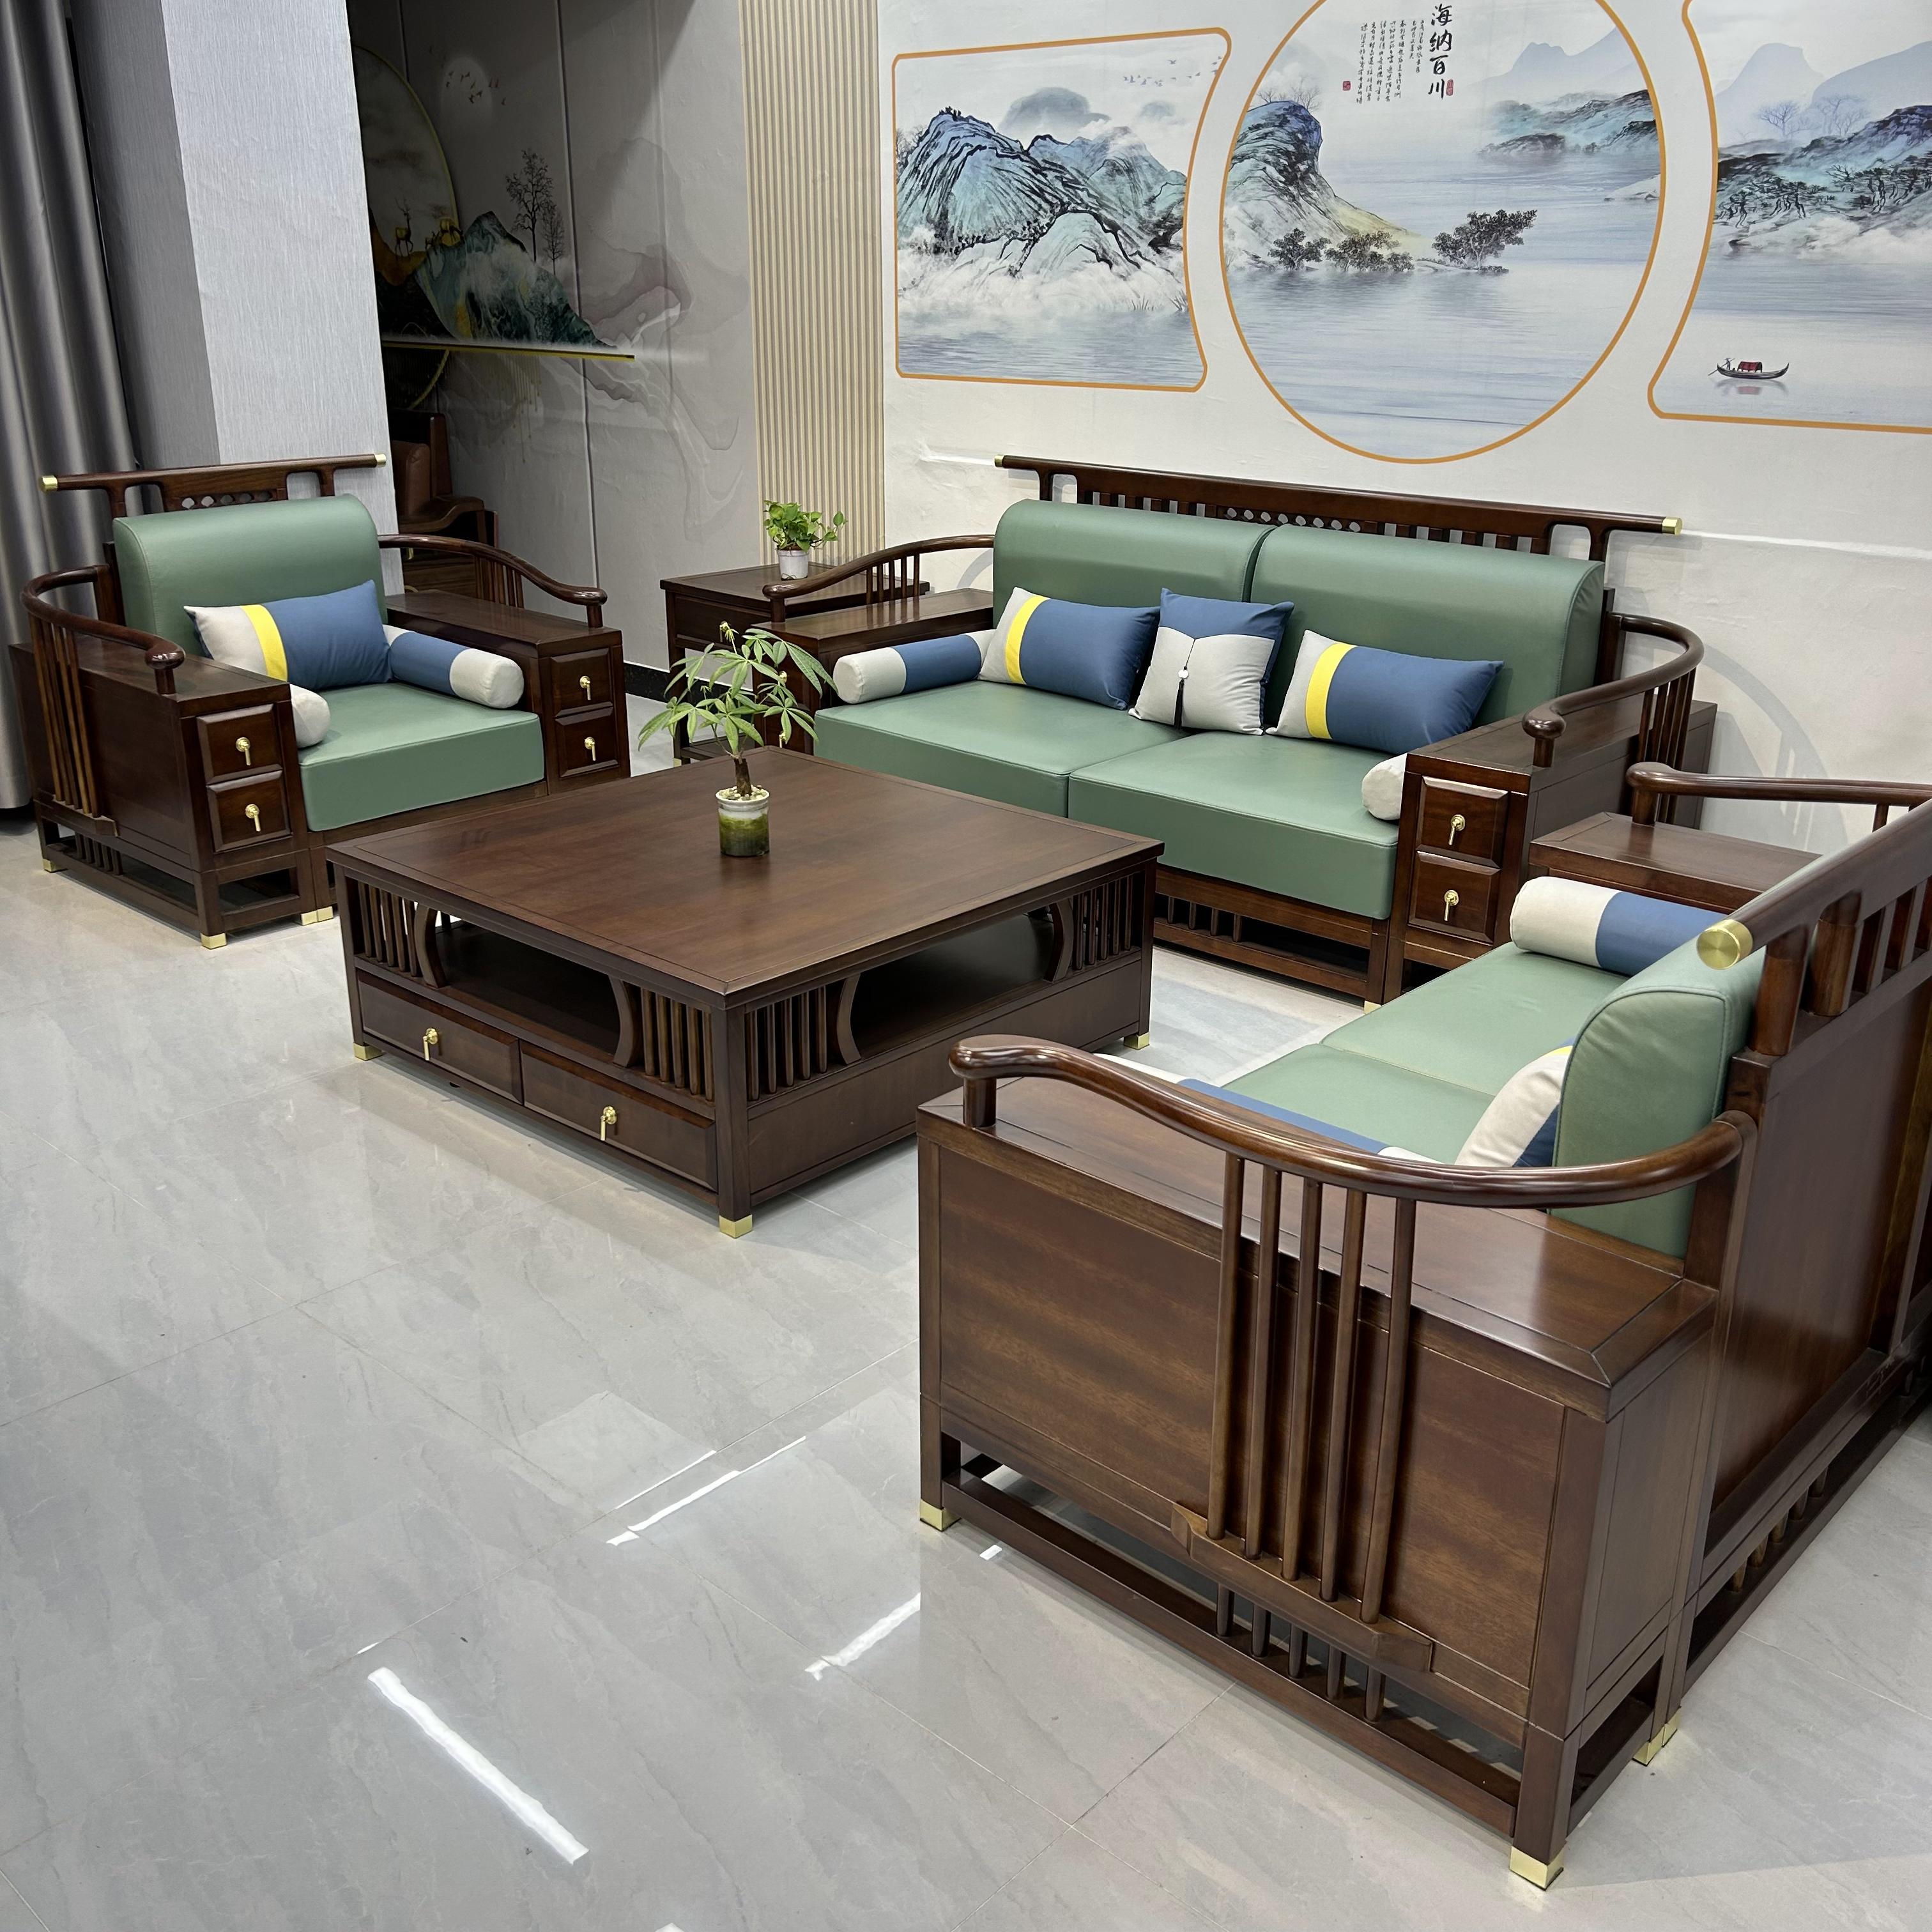 新中式客厅家具组合中国风大户型金丝檀木禅意别墅储物实木沙发